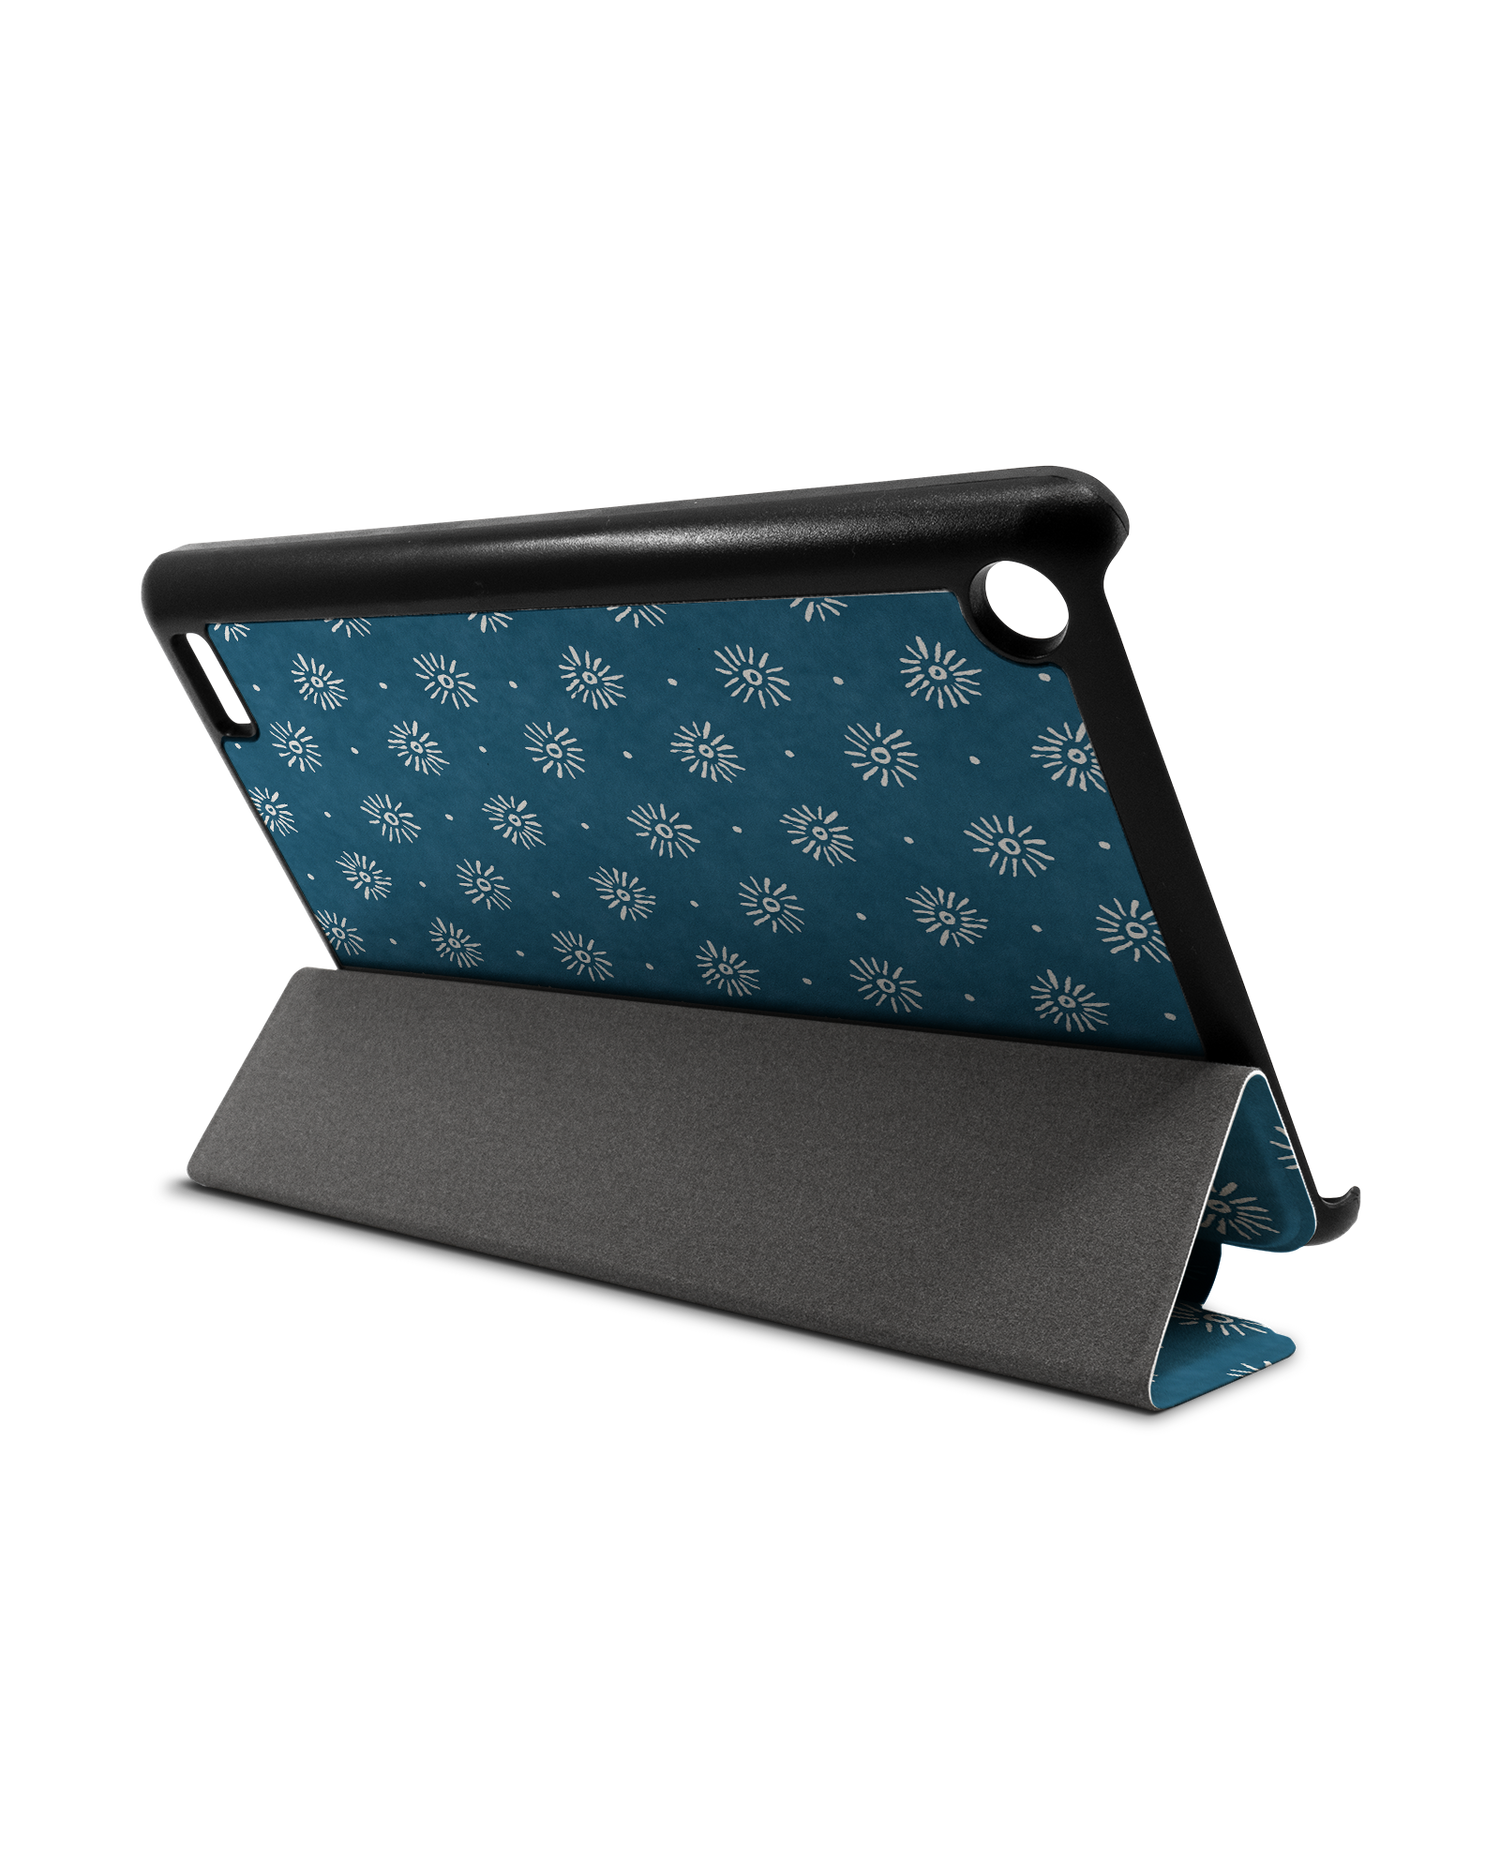 Indigo Sun Pattern Tablet Smart Case für Amazon Fire 7: Aufgestellt im Querformat